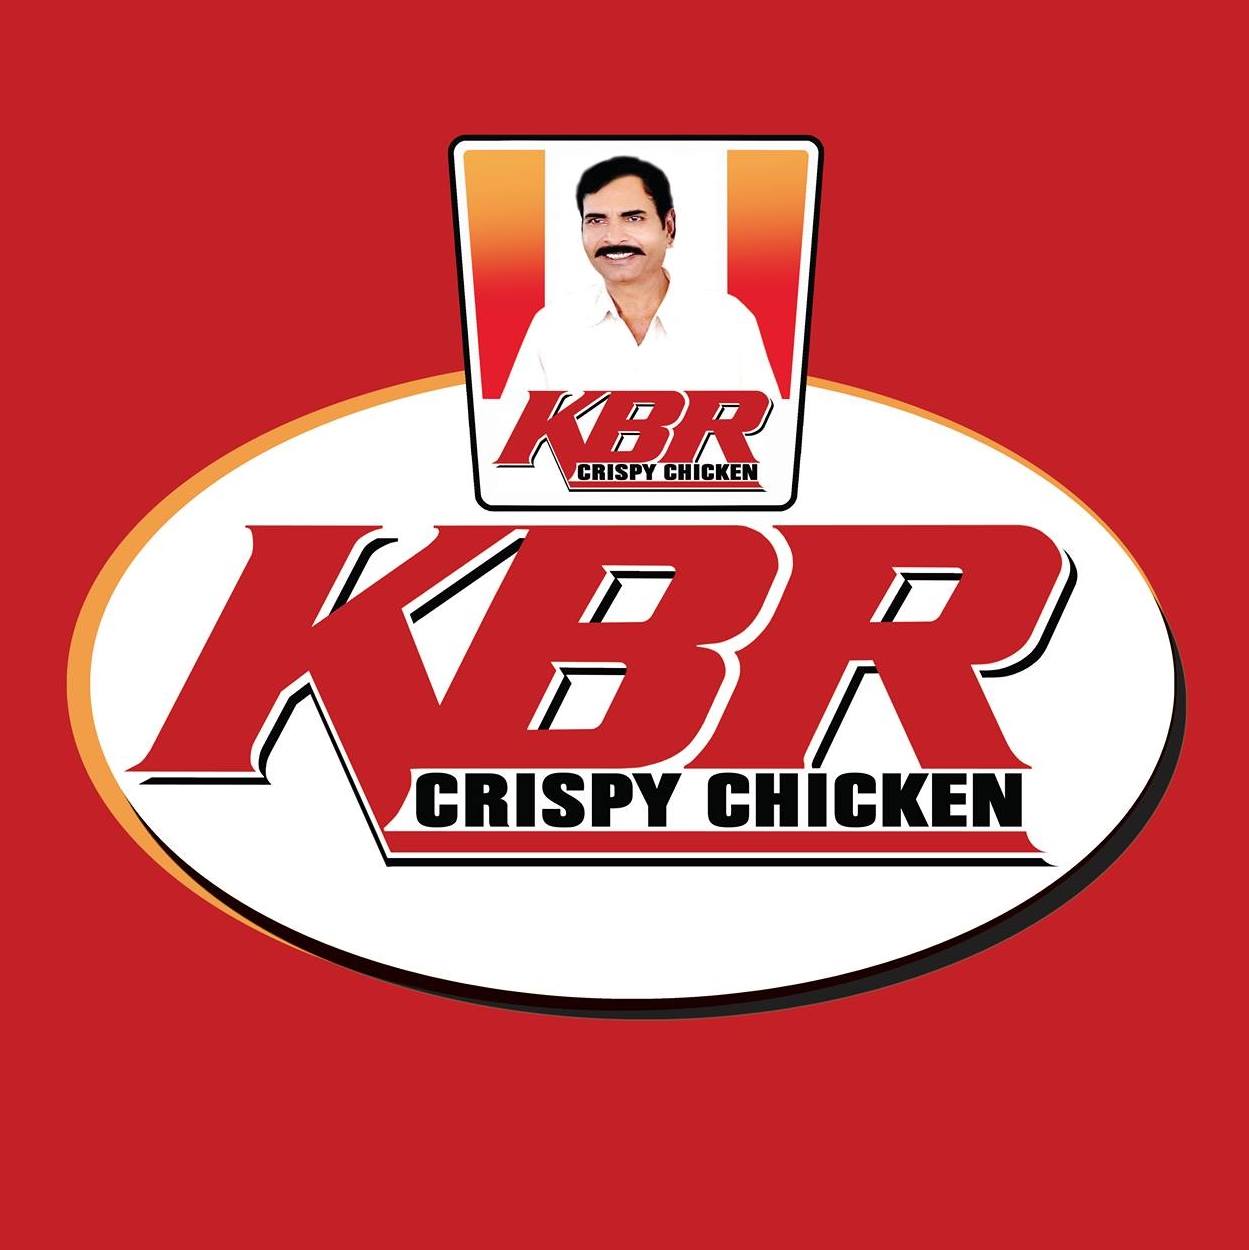 KBR Crispy Chicken logo